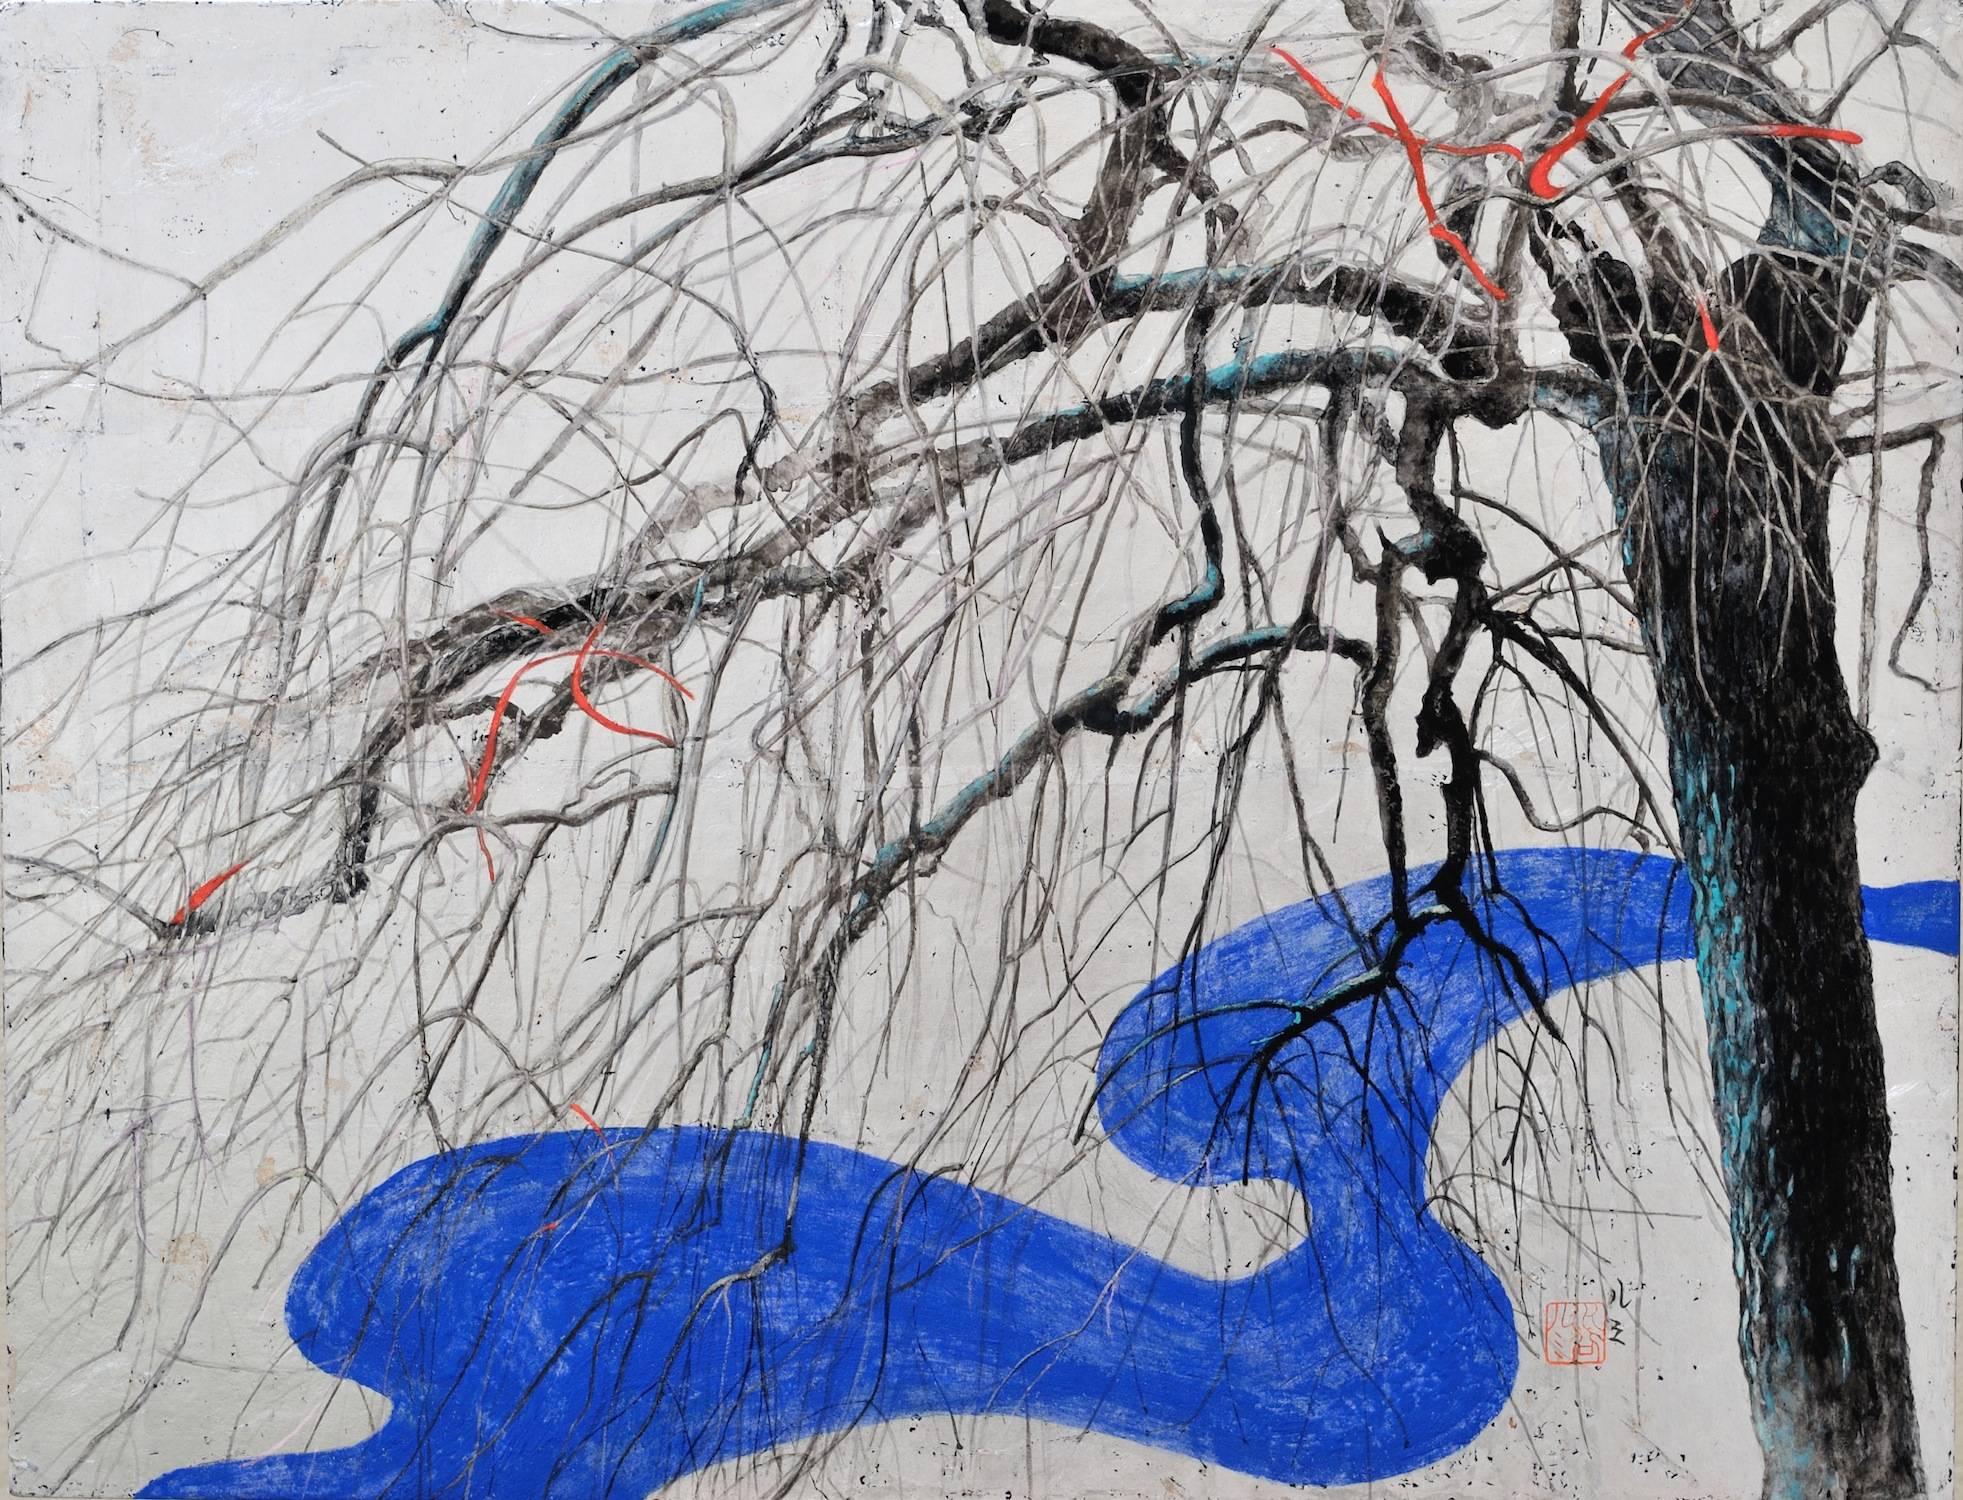 Wintry Song I ist ein einzigartiges Gemälde des zeitgenössischen Künstlers Lumi Mizutani. Das Gemälde ist mit Tusche, japanischen Pigmenten und Blattsilber auf Papier gemalt, das auf eine Holztafel aufgezogen ist. Die Maße betragen 50 × 65,2 cm.
Das